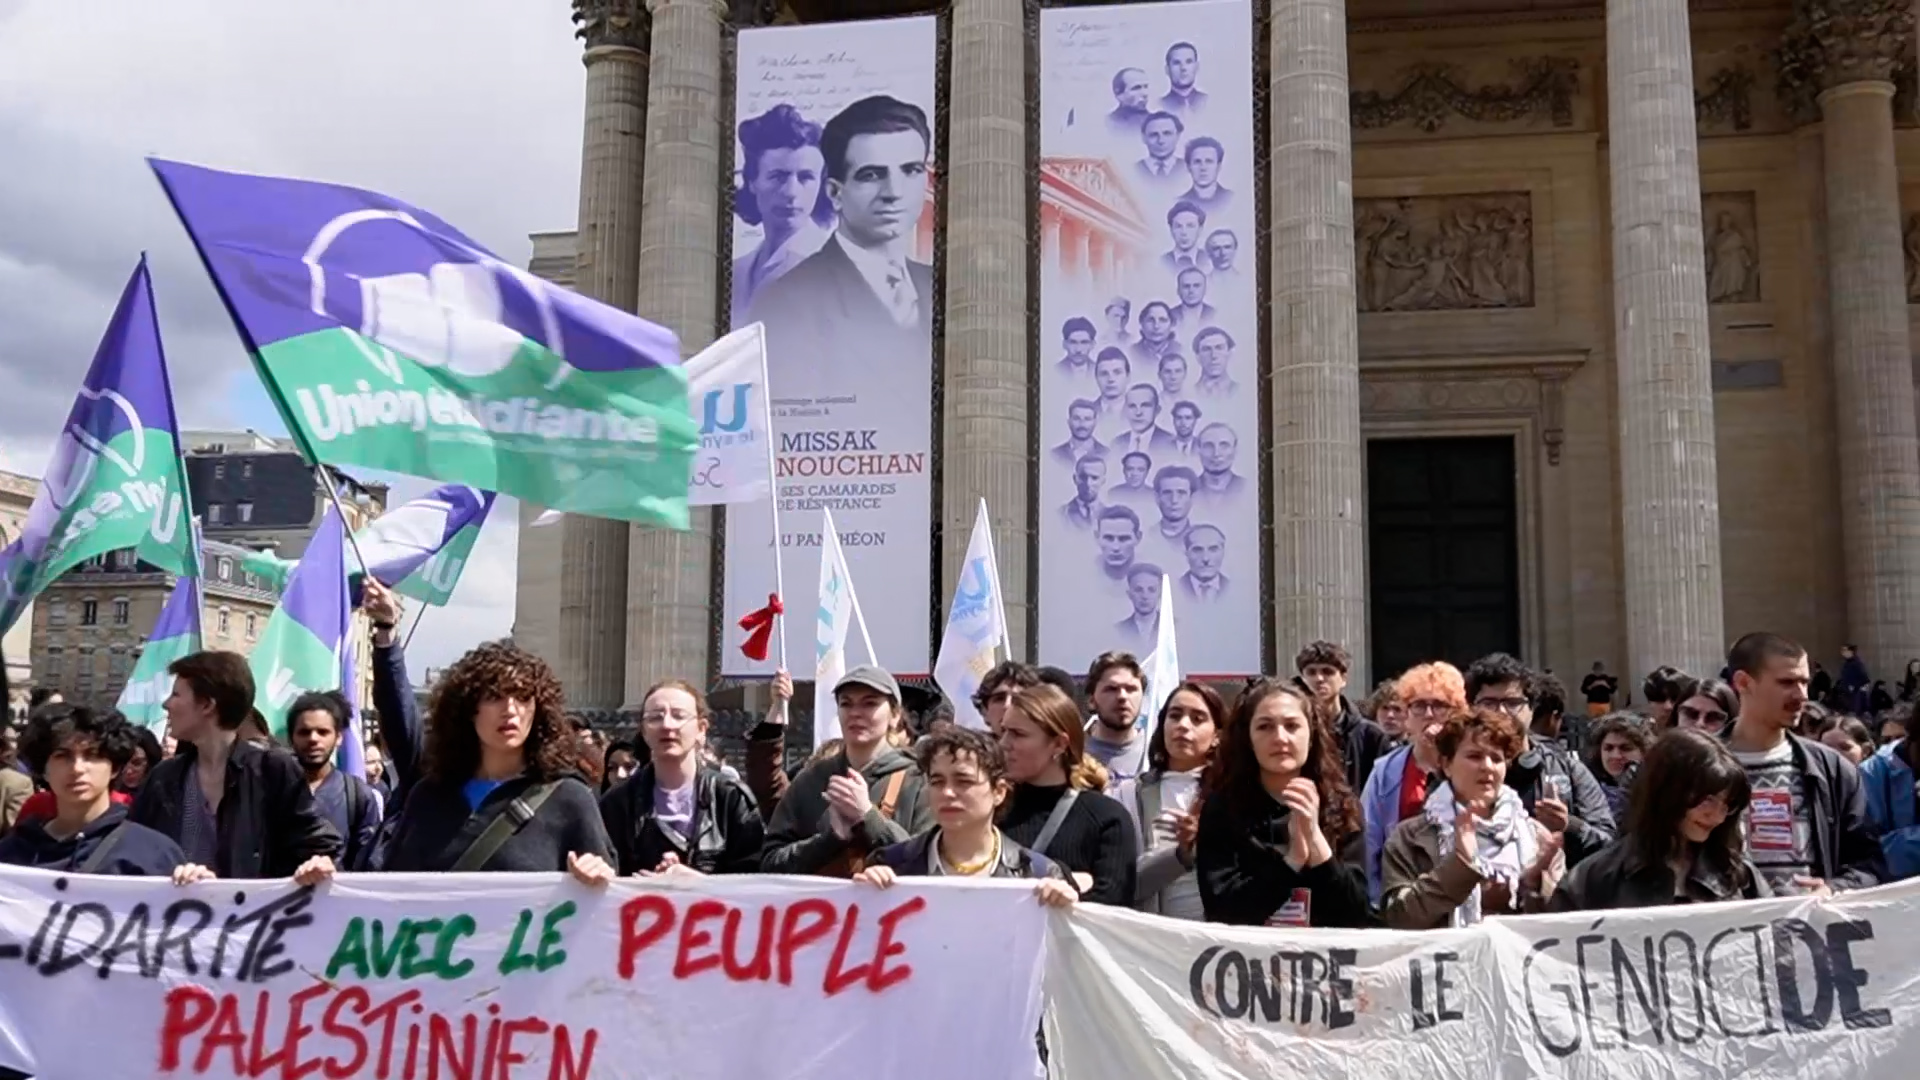 Mobilisation étudiante en France au Panthéon pour leurs droits